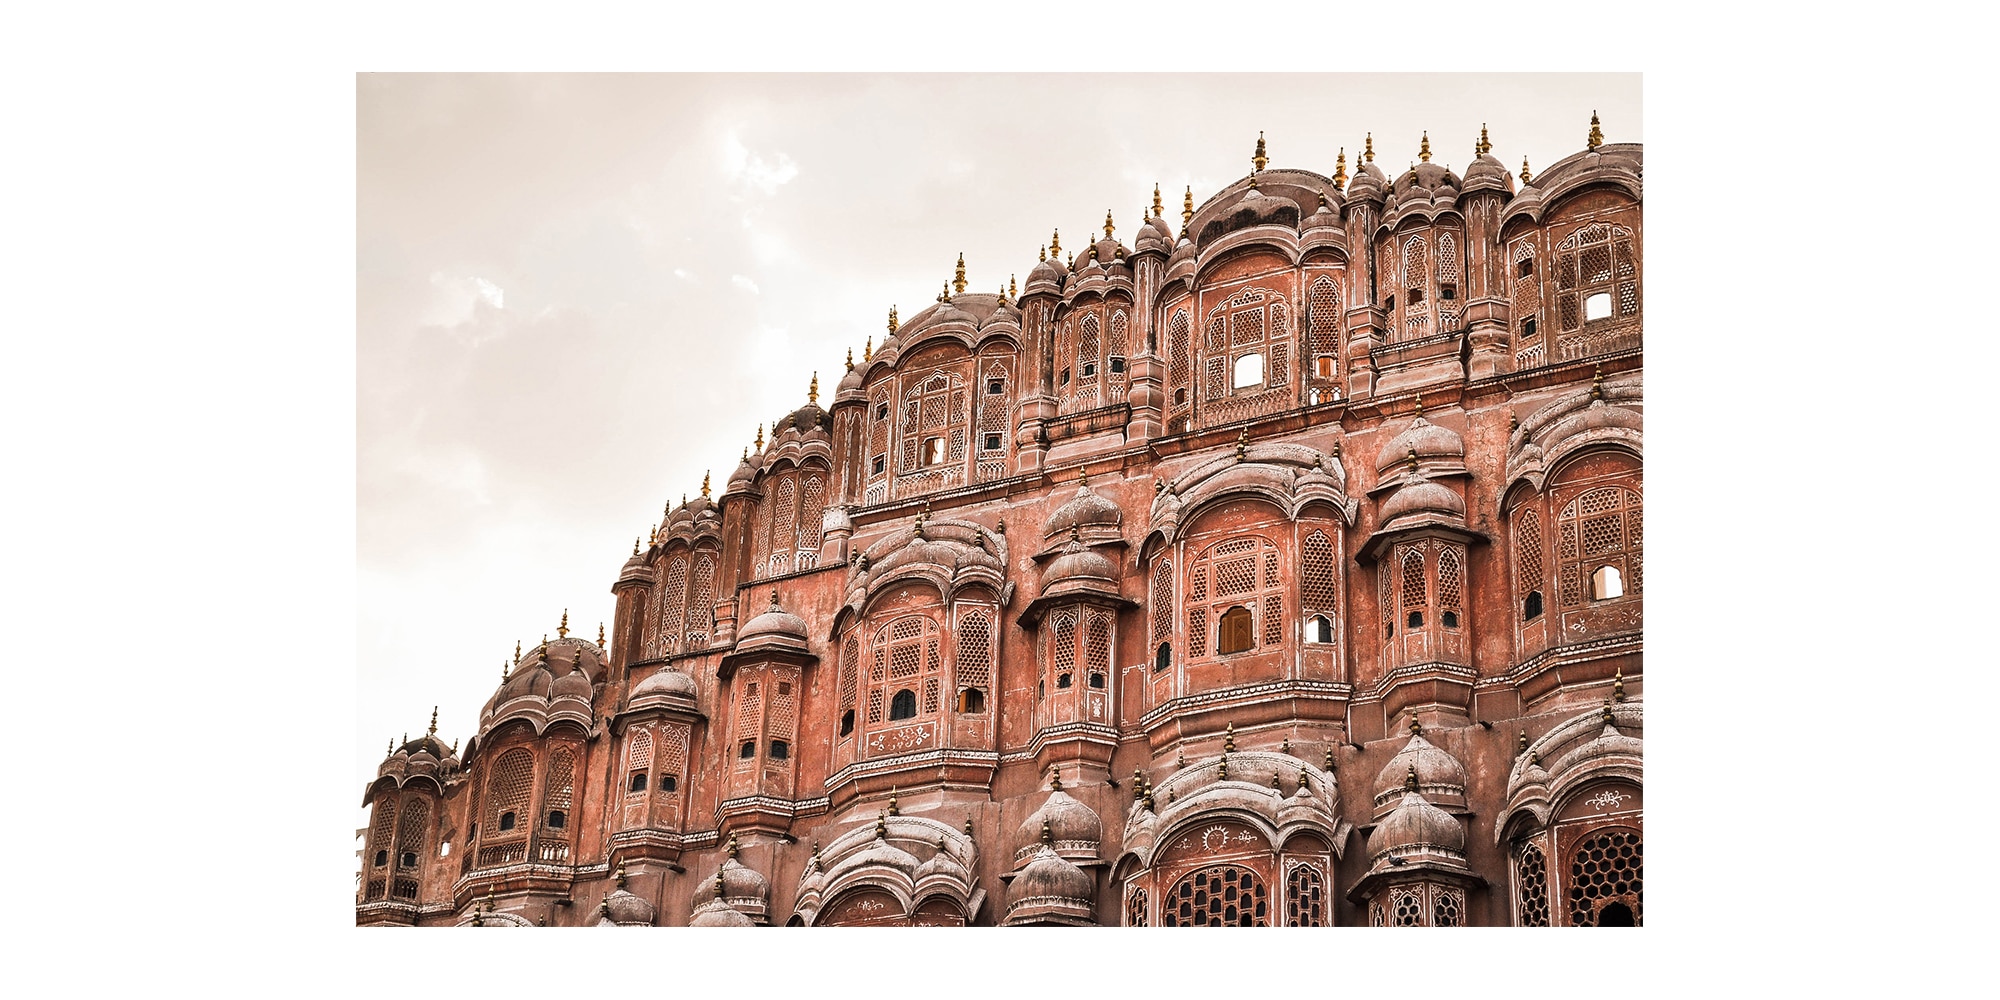 Le palais des vents, le Hawa Mahal à Jaipur en Inde